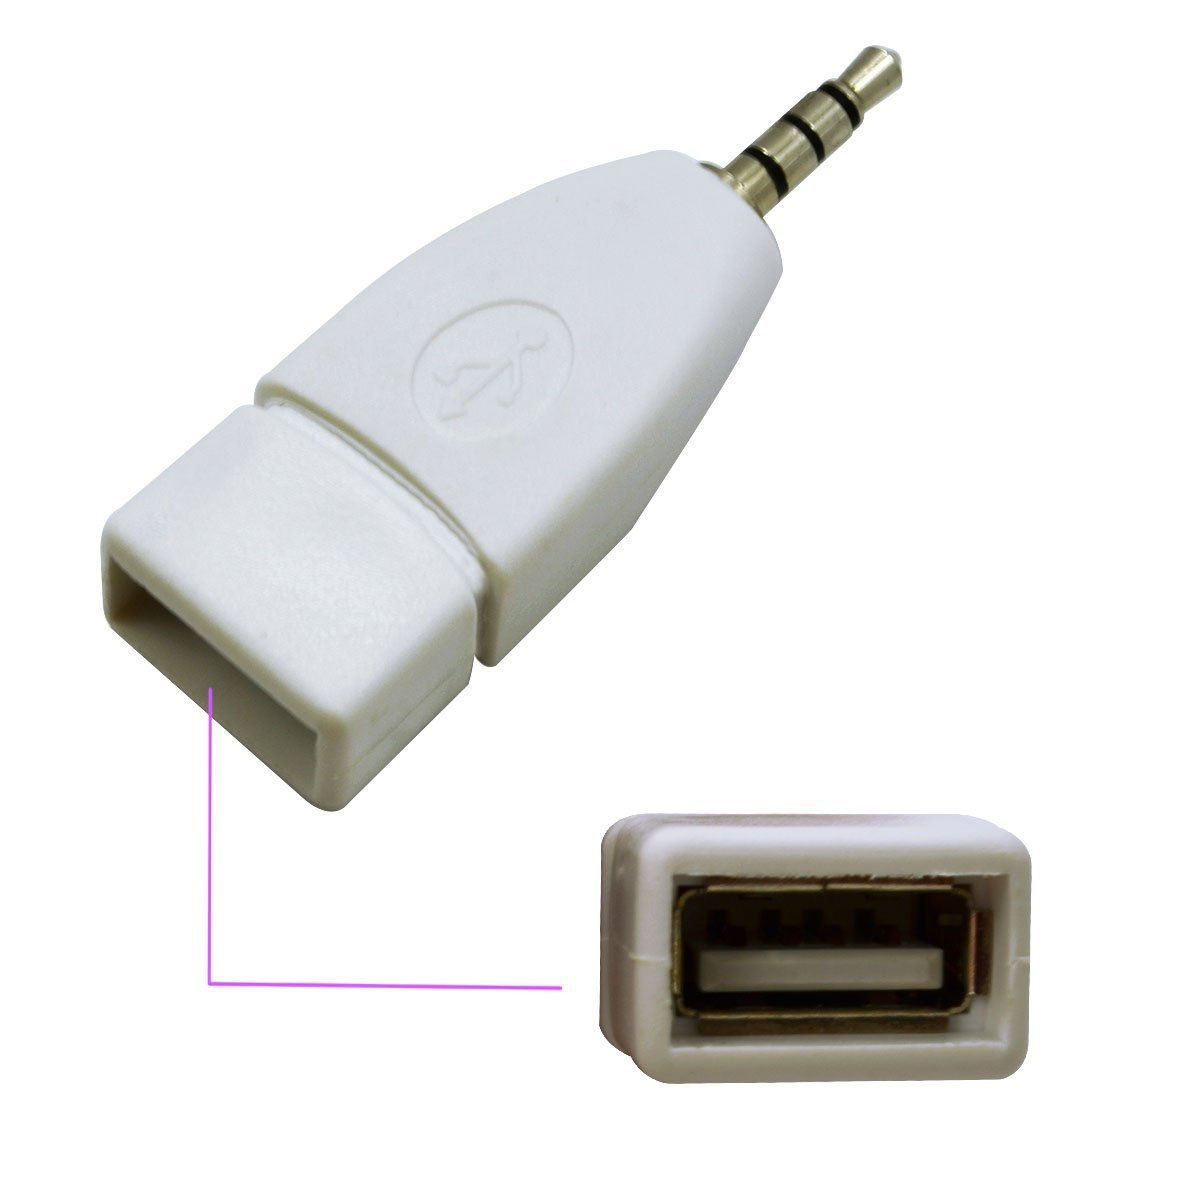 ADAPTADOR USB HEMBRA A JACK 3.5MM MACHO